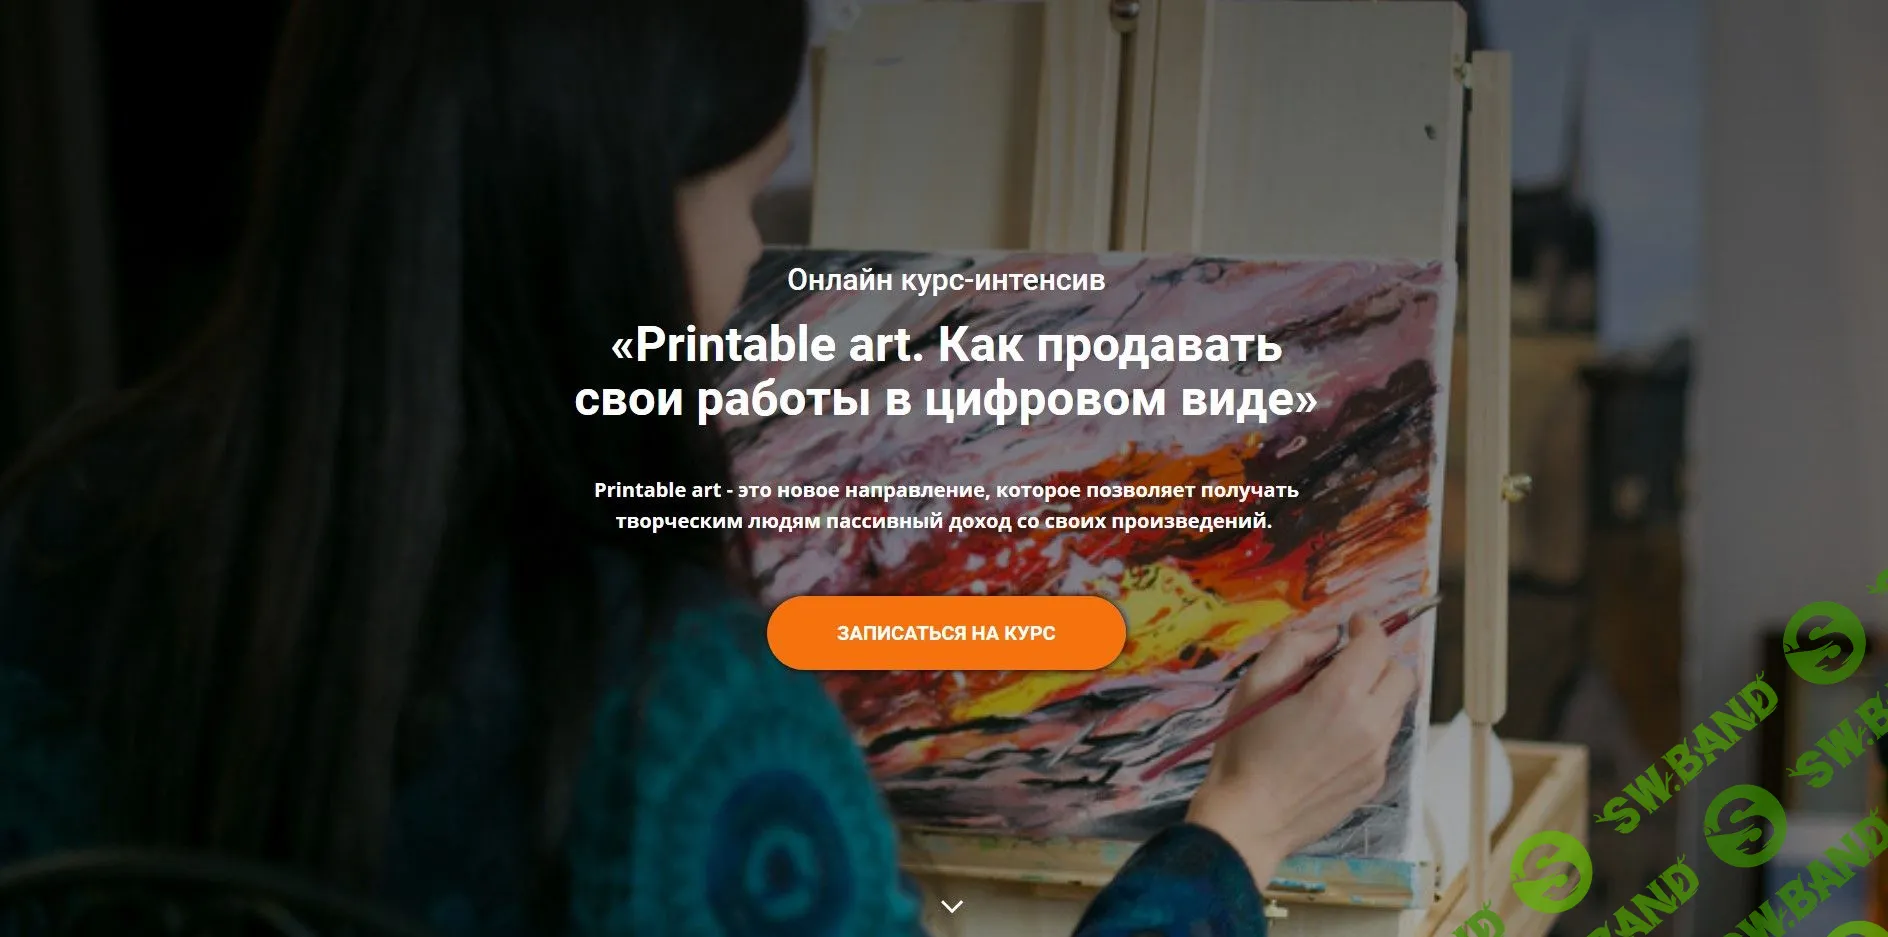 [Анастасия Стрижкова] Printable art. Как продавать свои работы в цифровом виде (2020)